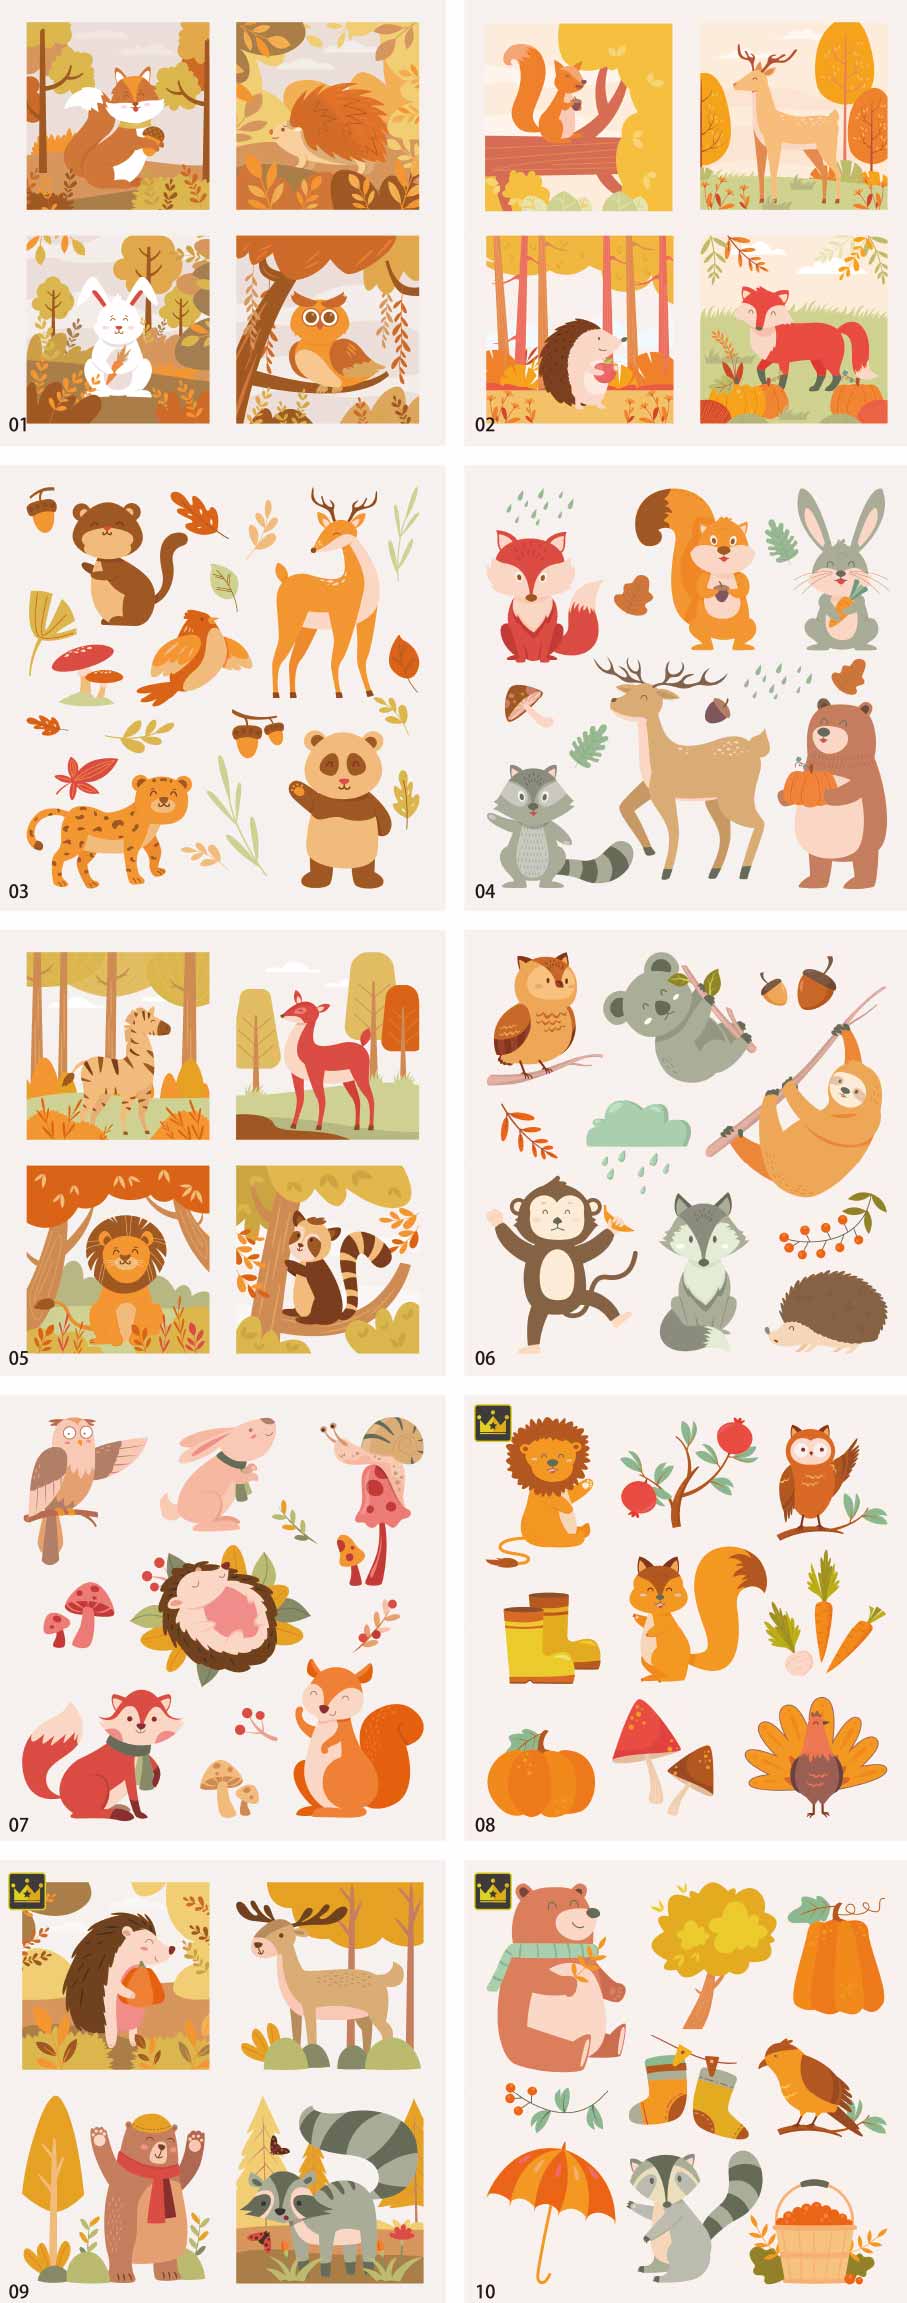 Autumn animal illustration collection